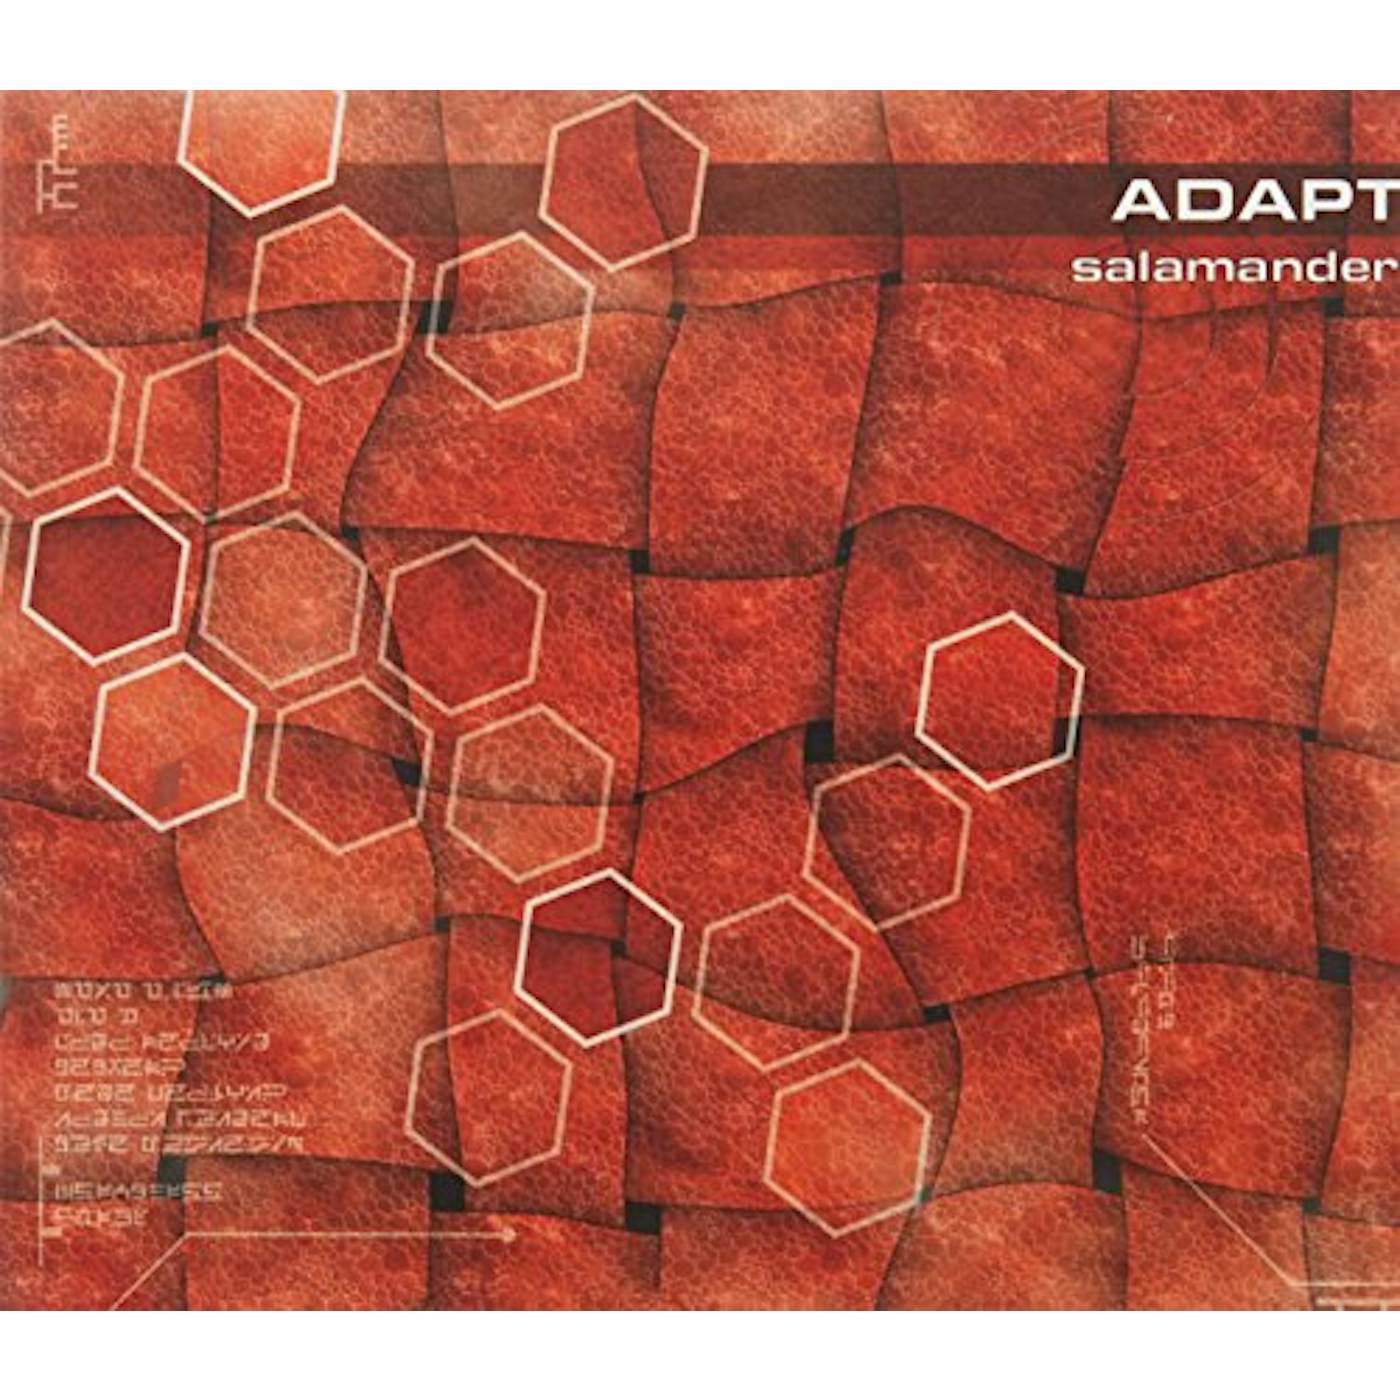 Salamander ADAPT CD